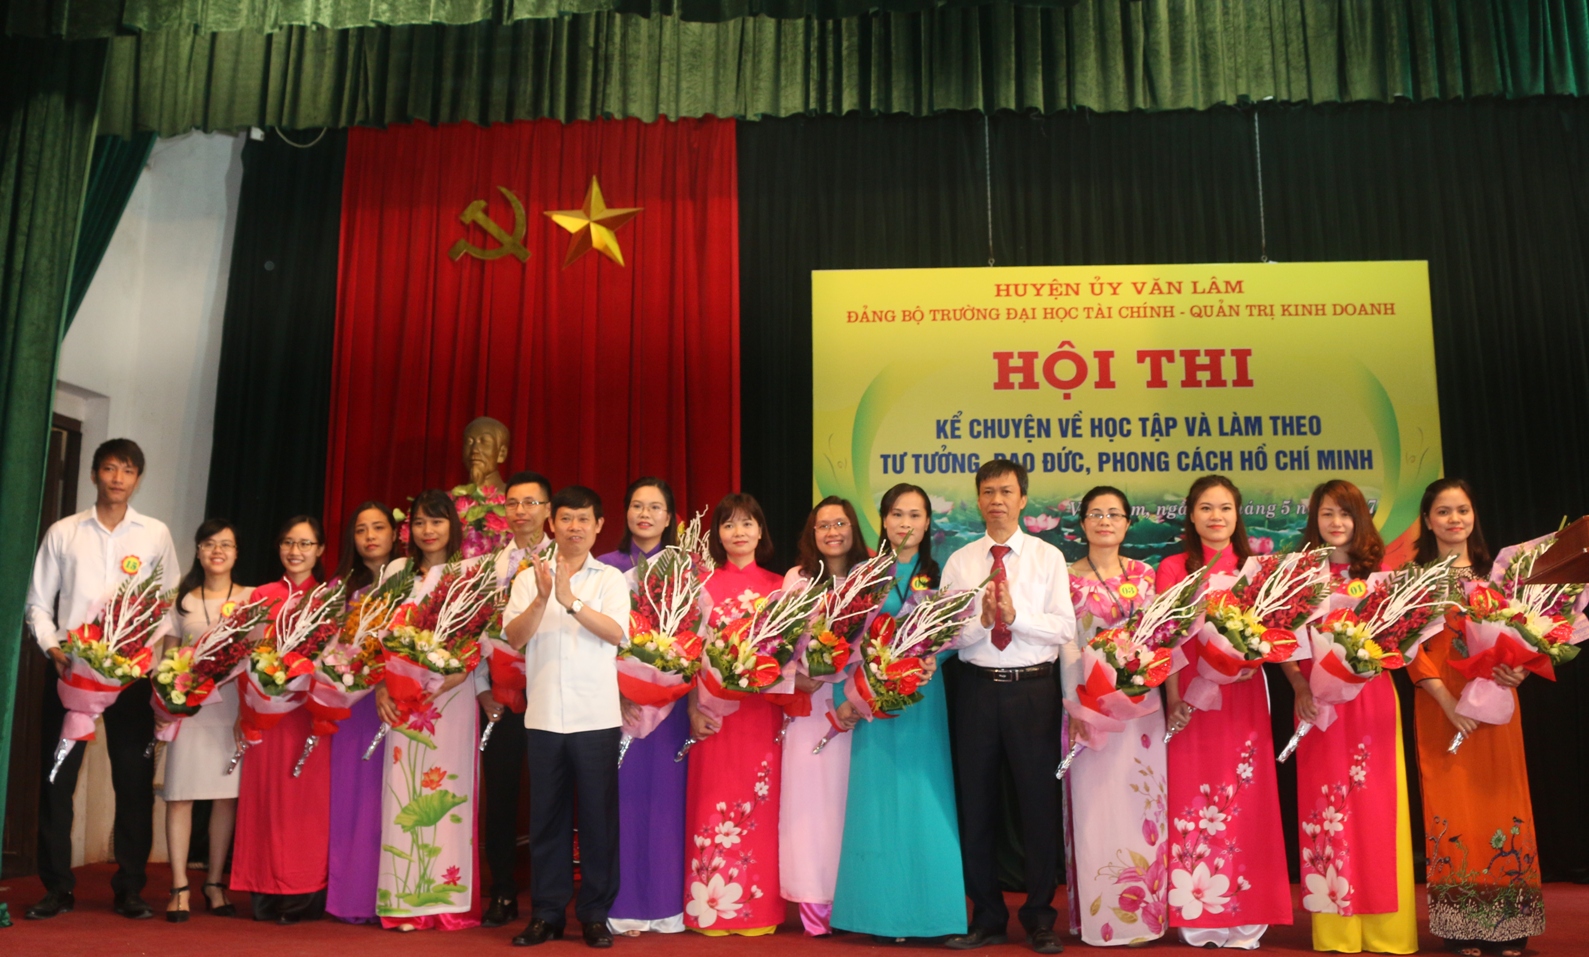 Hội thi “ Kể chuyện về học tập và làm theo tư tưởng, đạo đức, phong cách Hồ Chí Minh” năm 2017